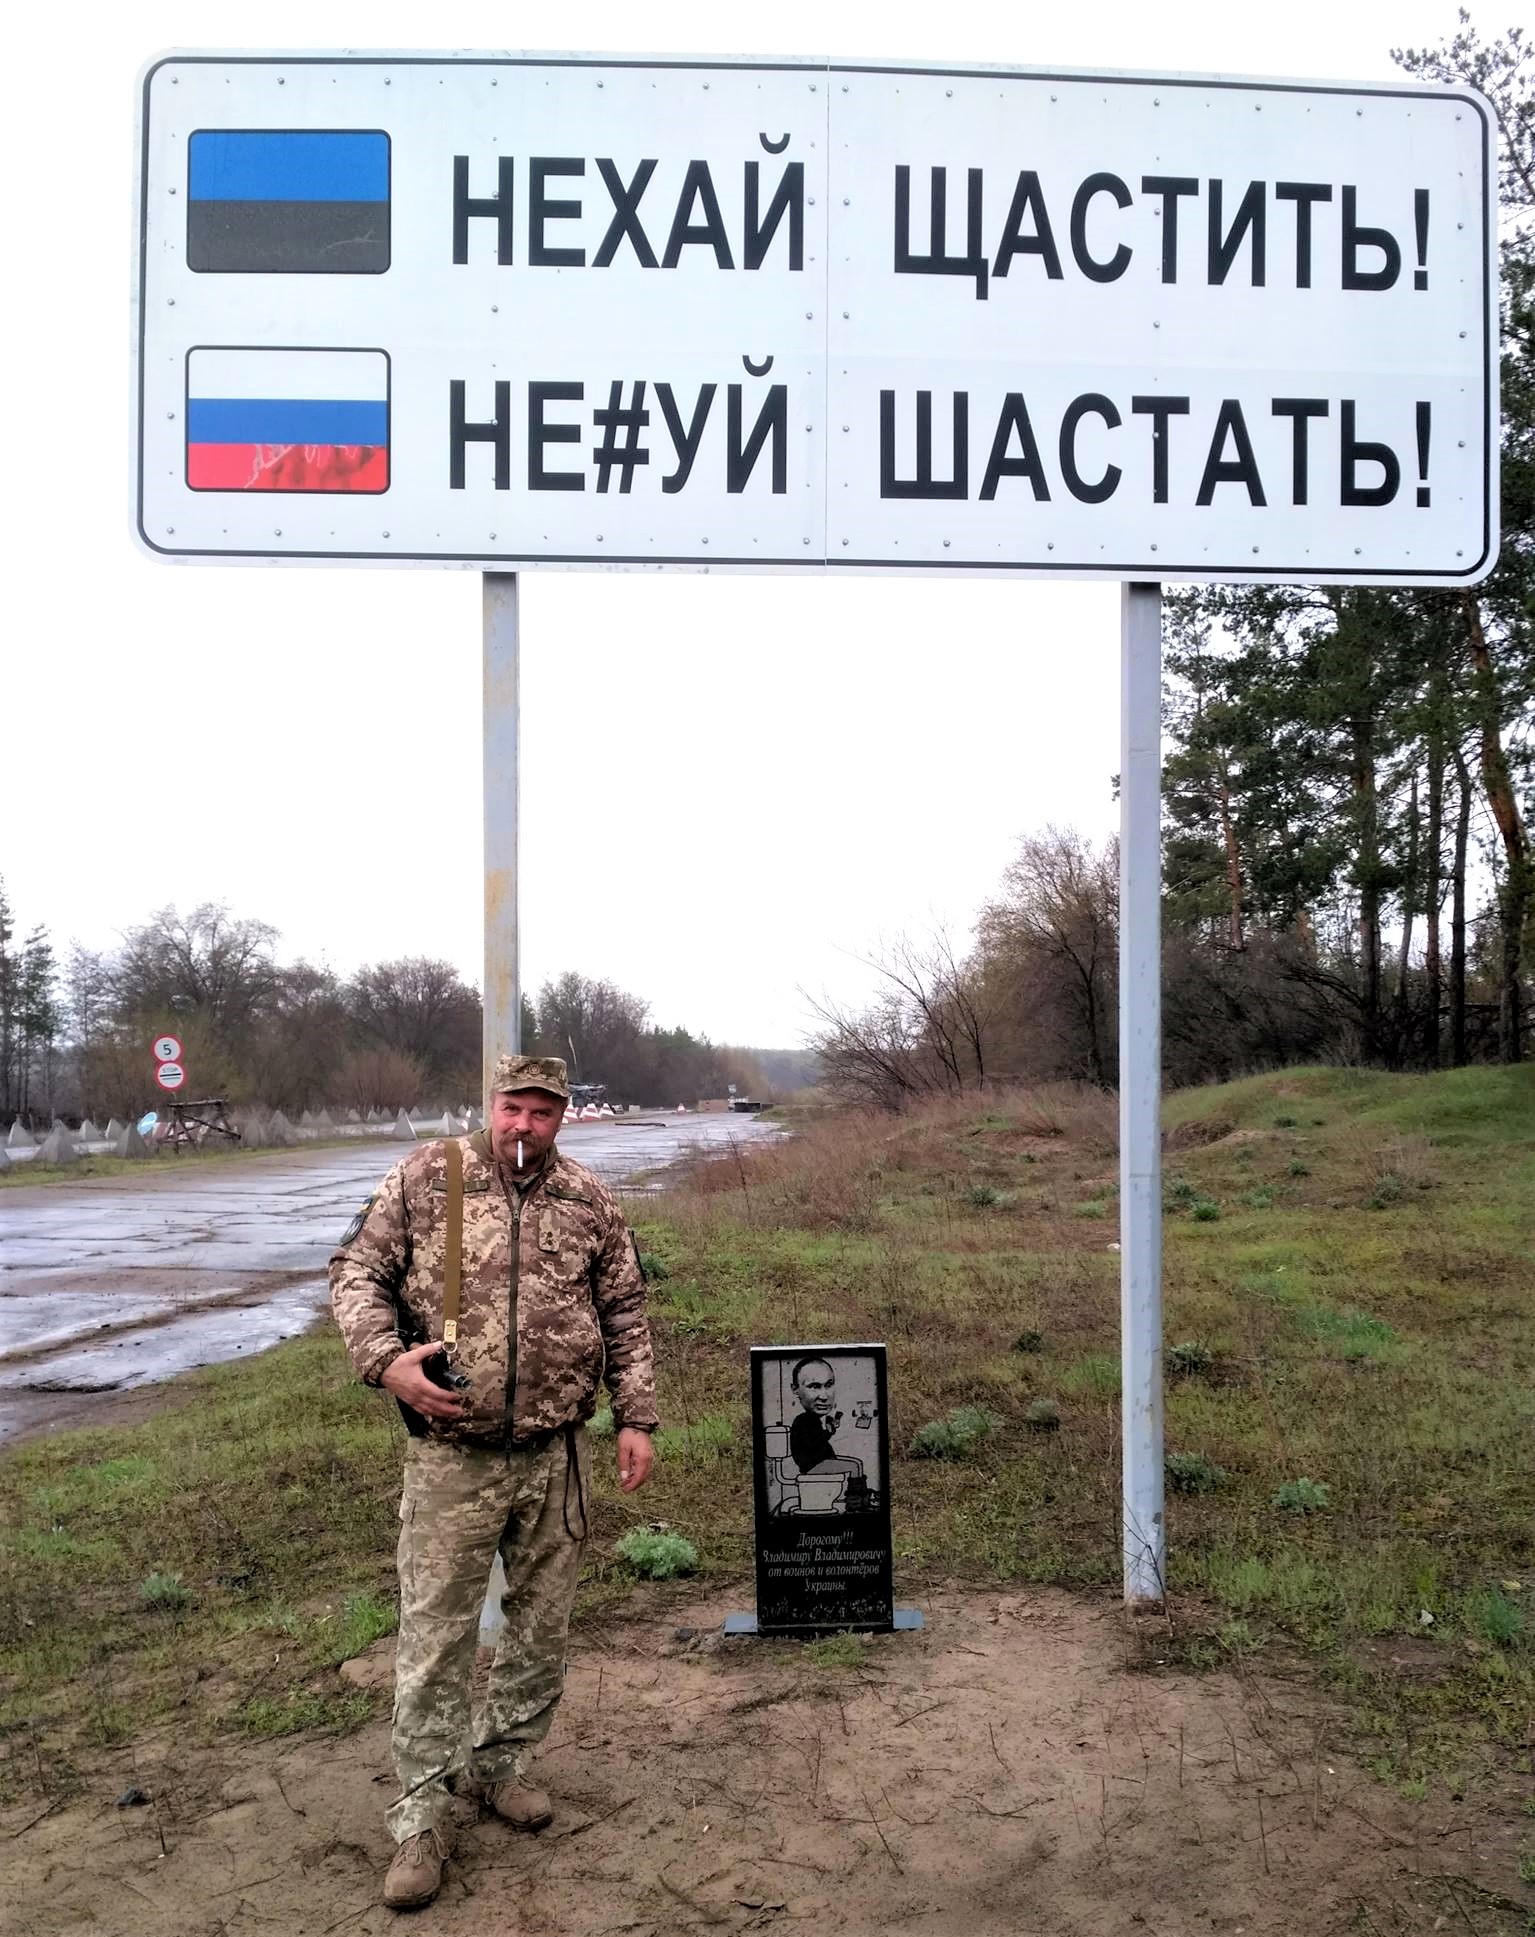 Игорь Тарас Морковин возле дорожного знака Нехуй шастать на Донбассе